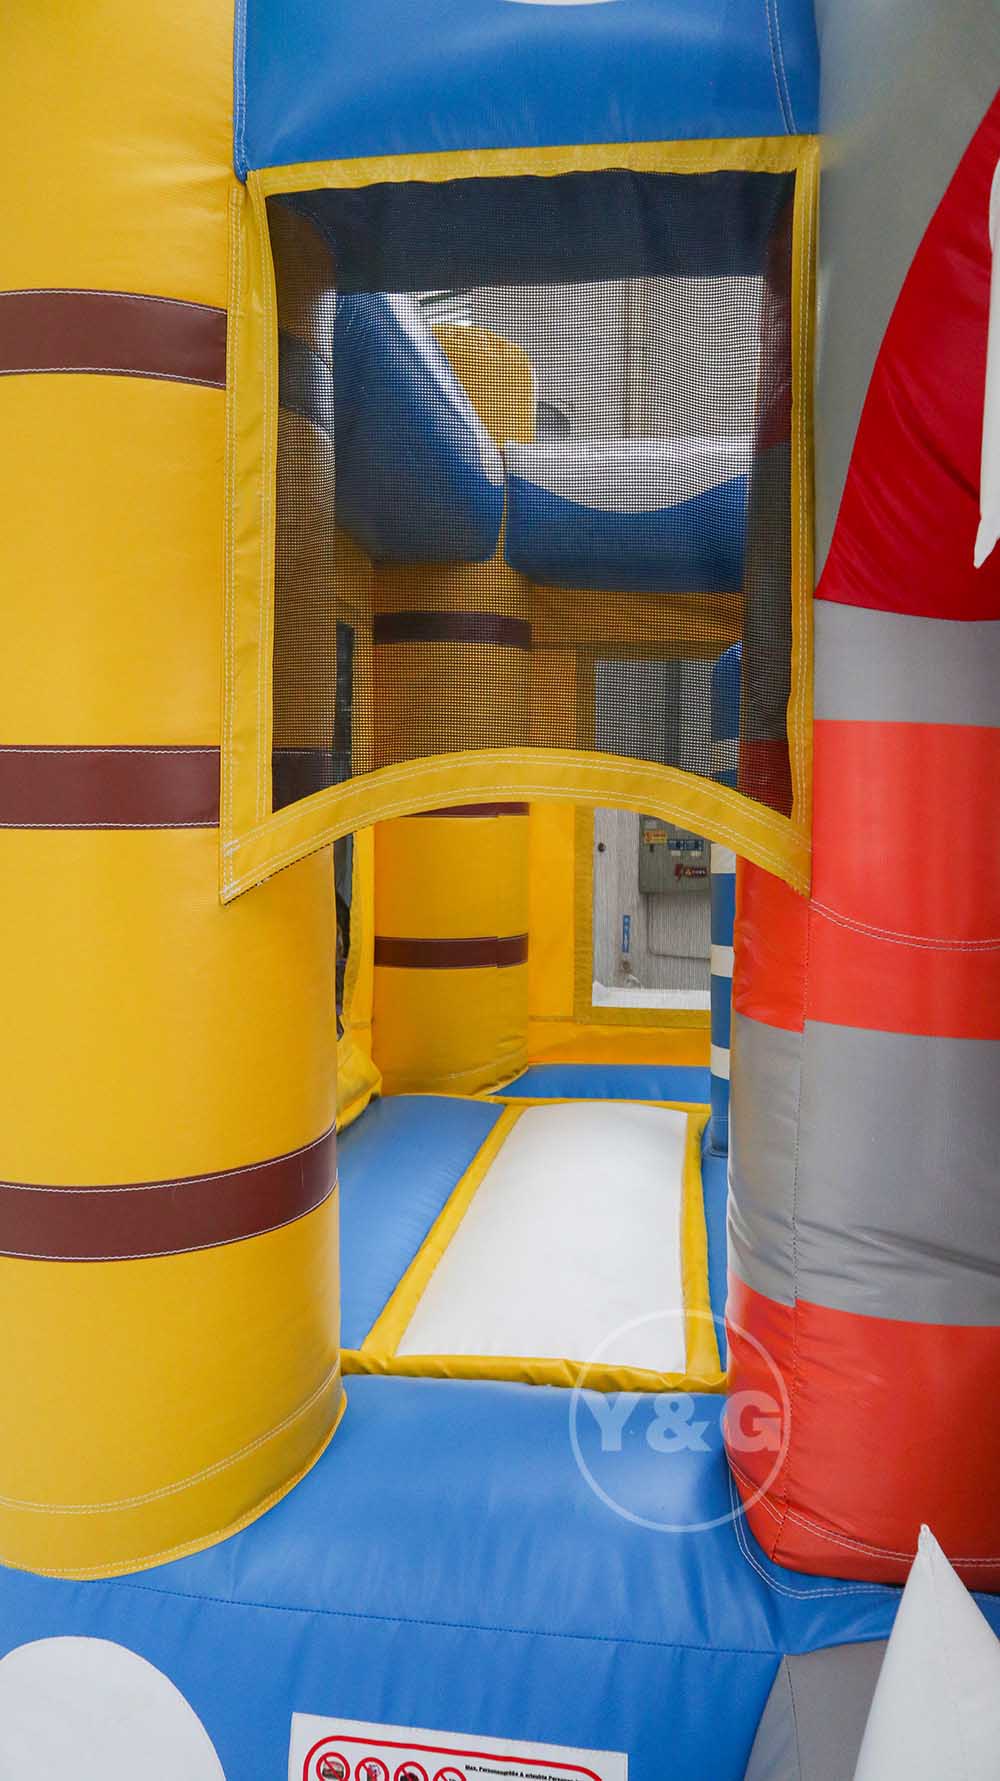 Inflatable Shark Bounce HouseYG-139